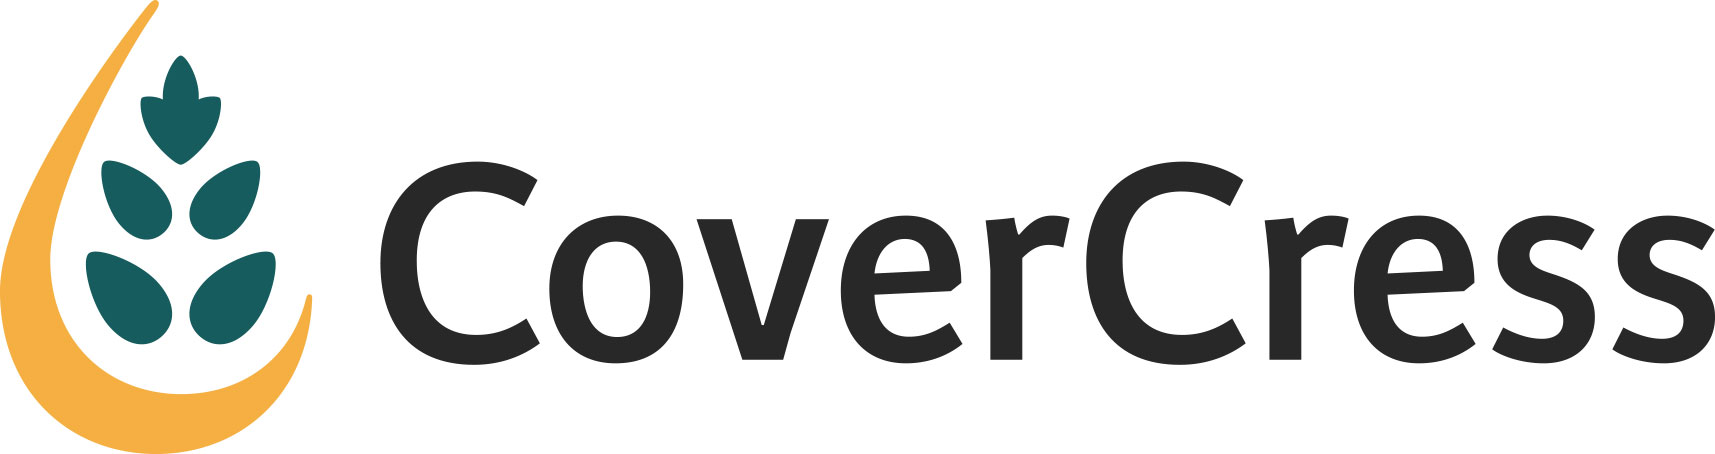 Covercress large logo